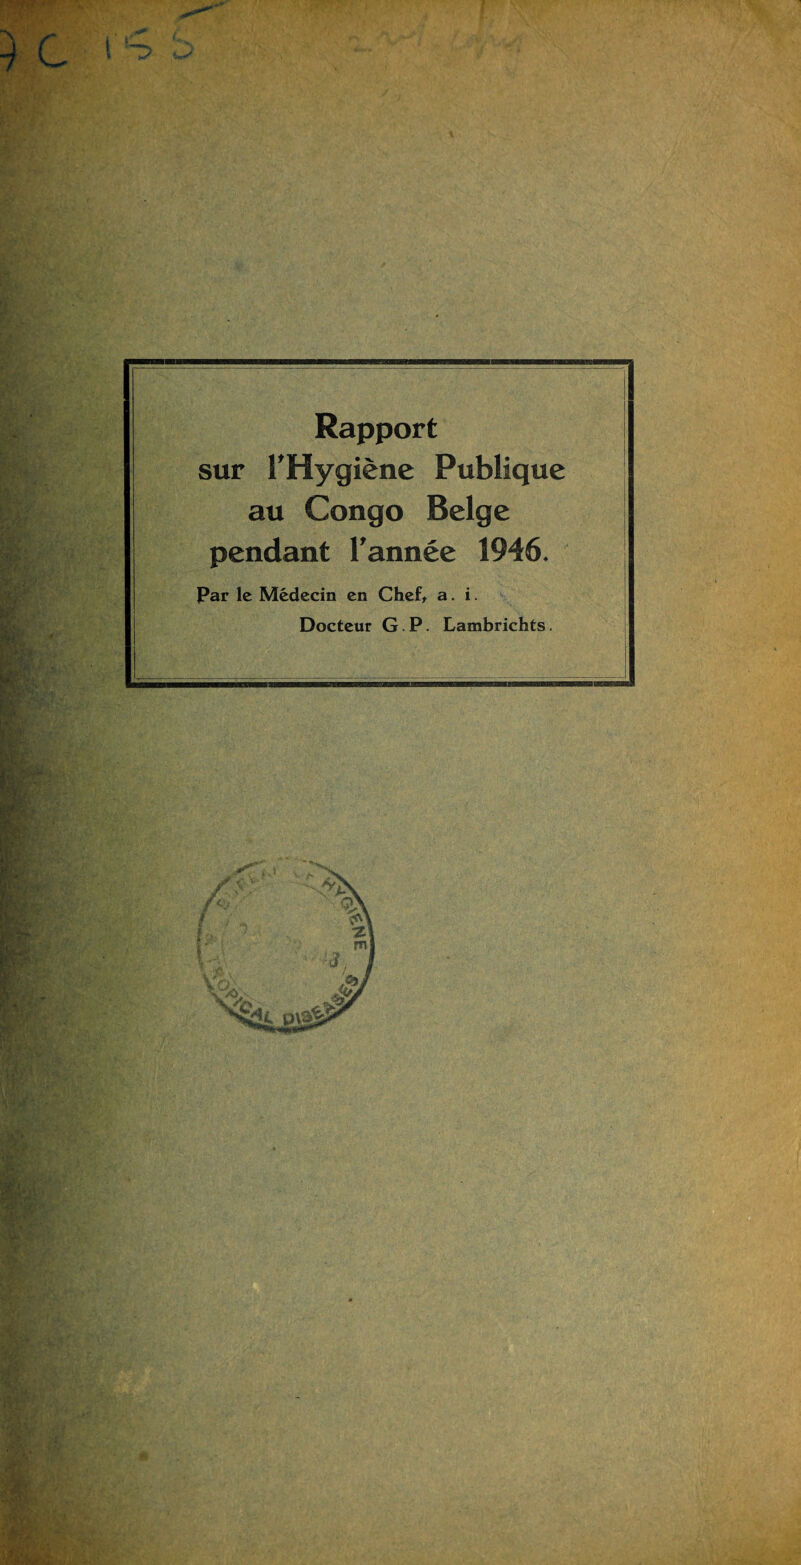 . Mb ■j r 'r & ftdf -4 ' s- Rapport sur l’Hygiene Publiquc an Congo Beige pendant l’annee 1946. Par le Medecin en Chef* a. i. Docteur G. P. Lambrichts